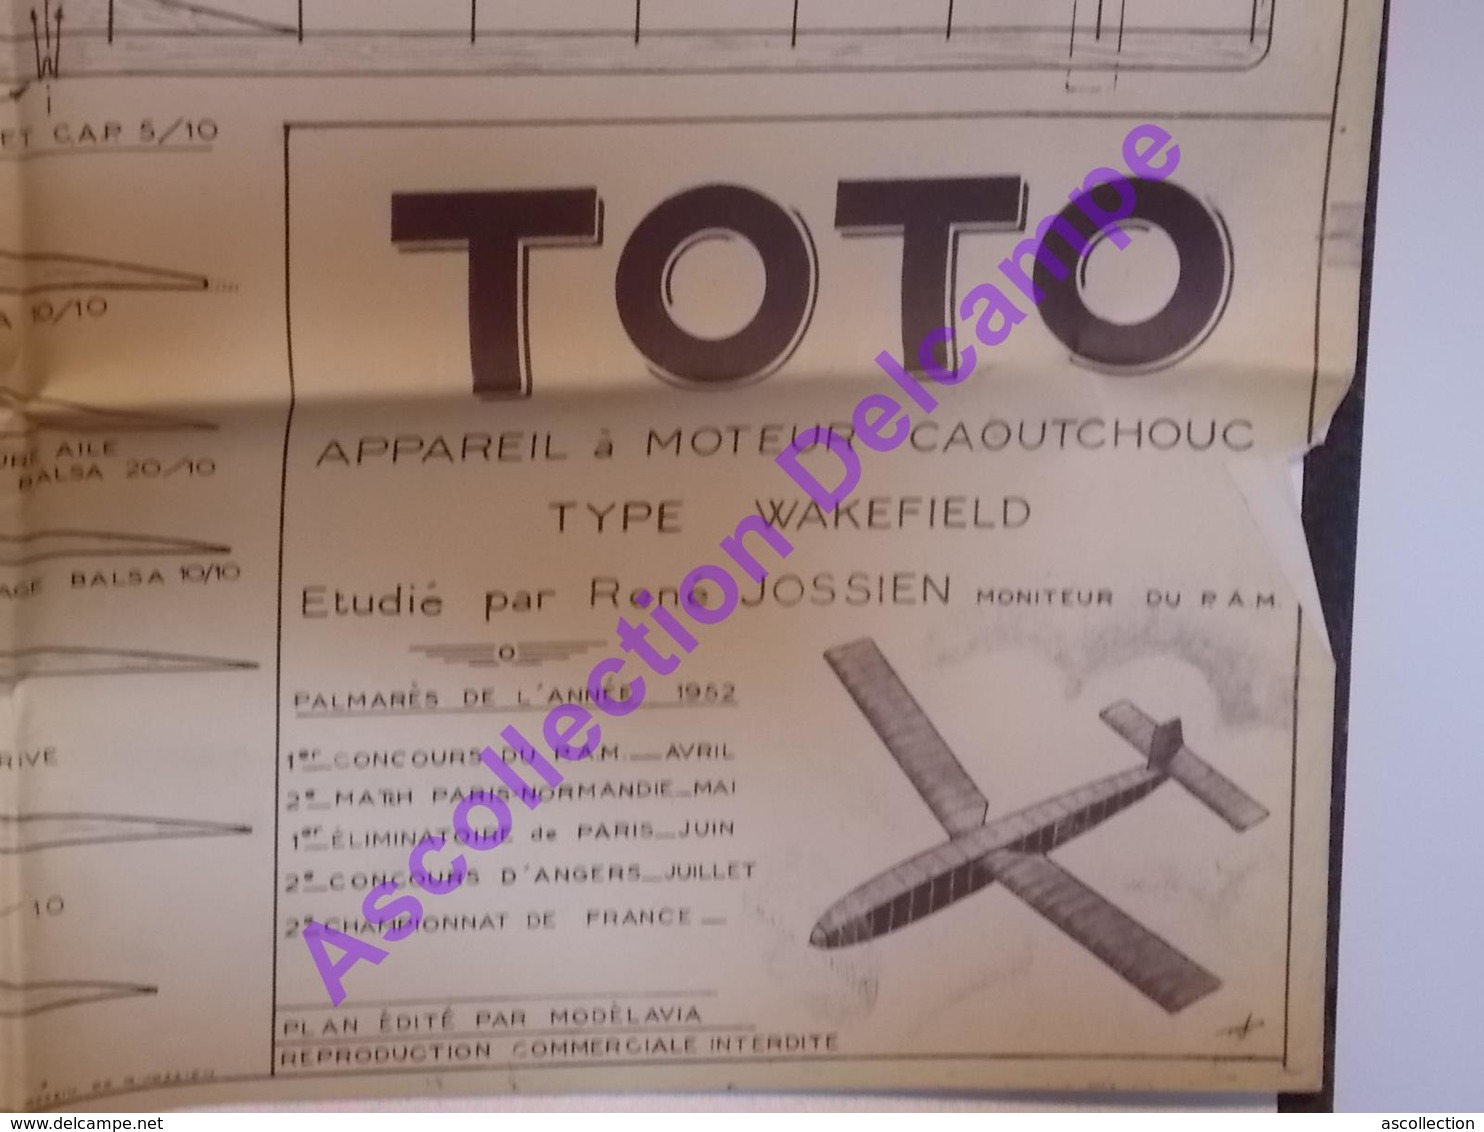 Plan Aeromodelisme Maquette Avion Planeur Le Toto Moteur Caoutchouc Wakefield 1952 PAM Modèlavia - Flugzeuge